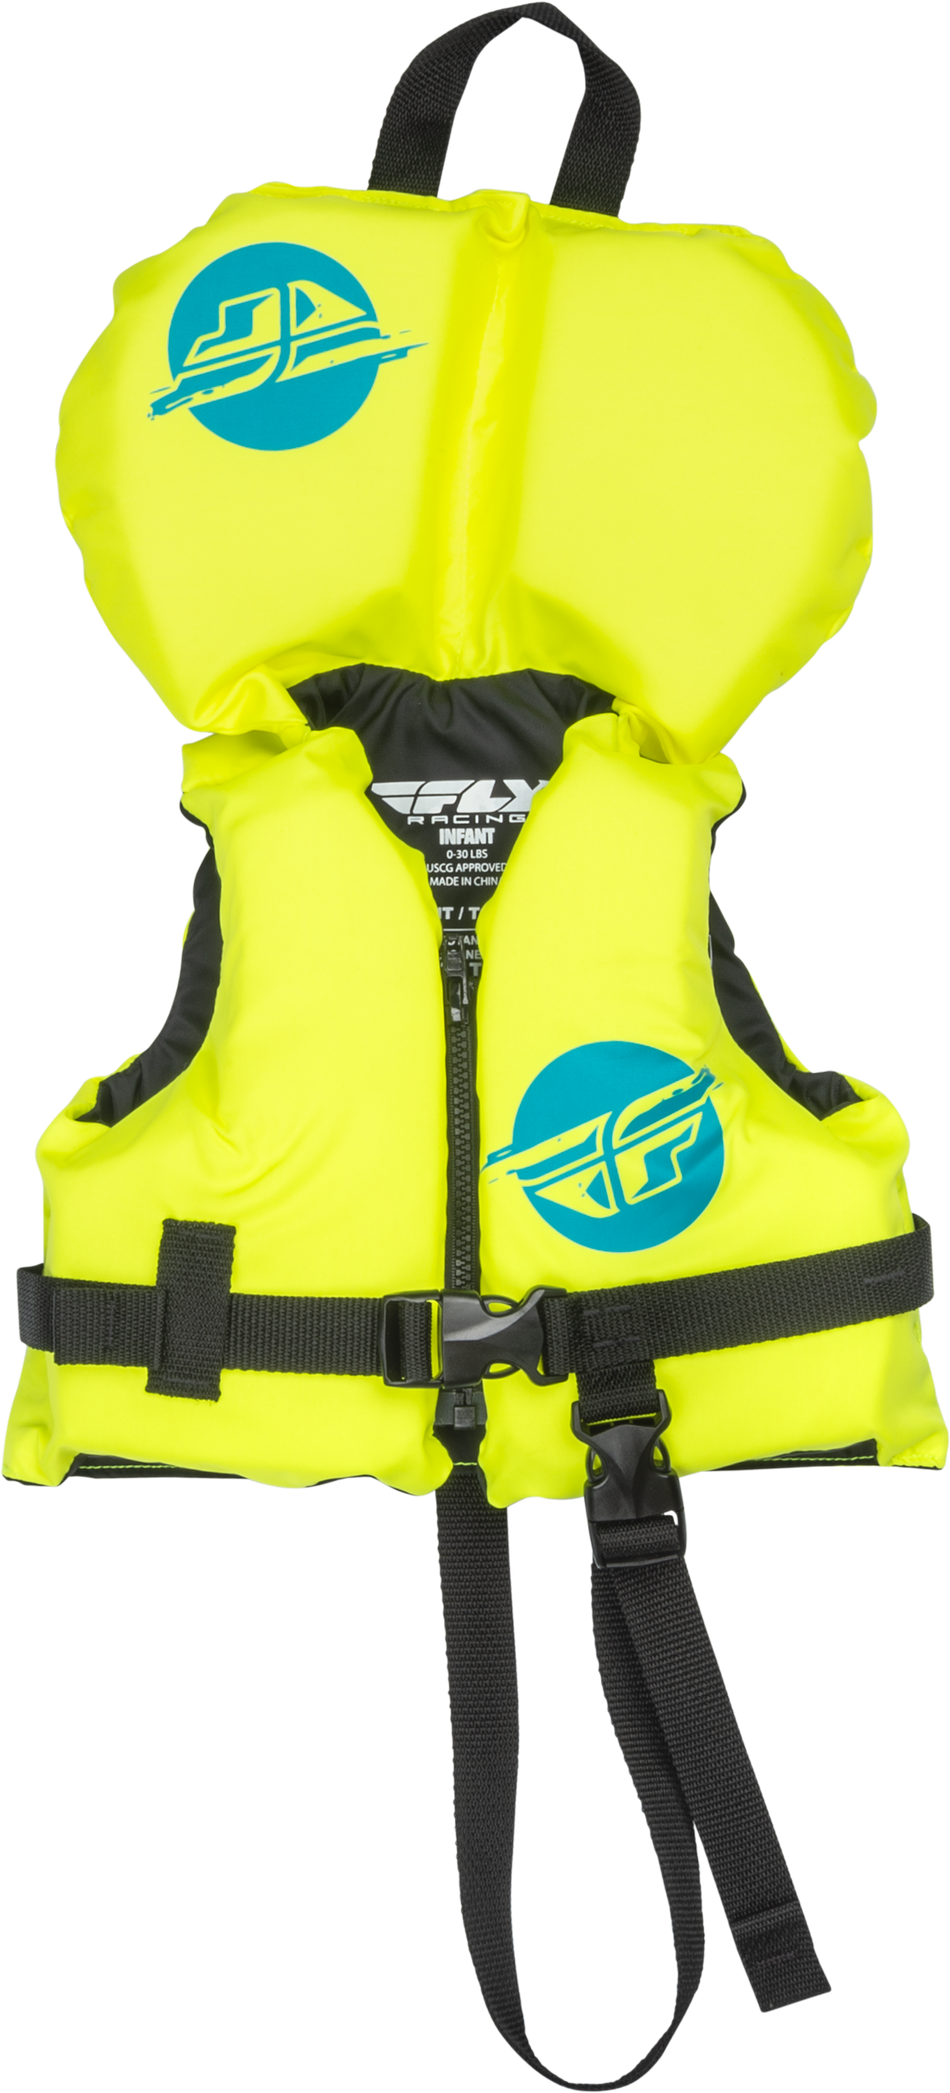 FLY RACING Infant Flotation Vest Hi-Vis/Teal 221-30311